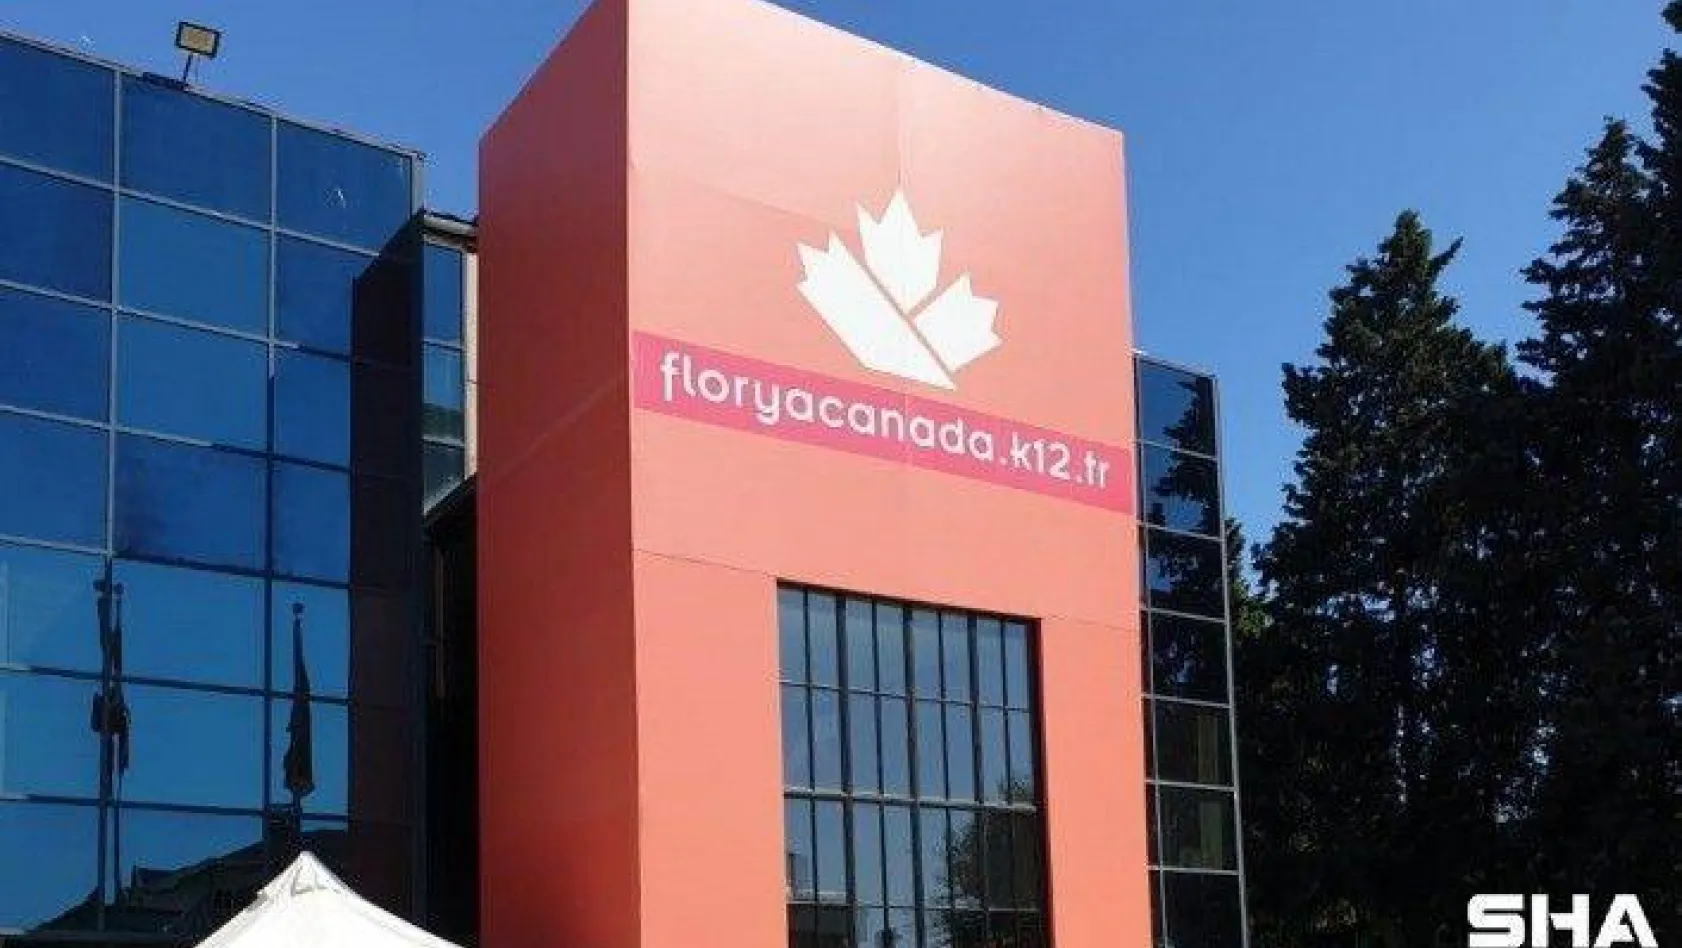 Milli Eğitim Bakanlığı'ndan onaylı, Kanada diploması veren tek okul Florya Canada Okulları